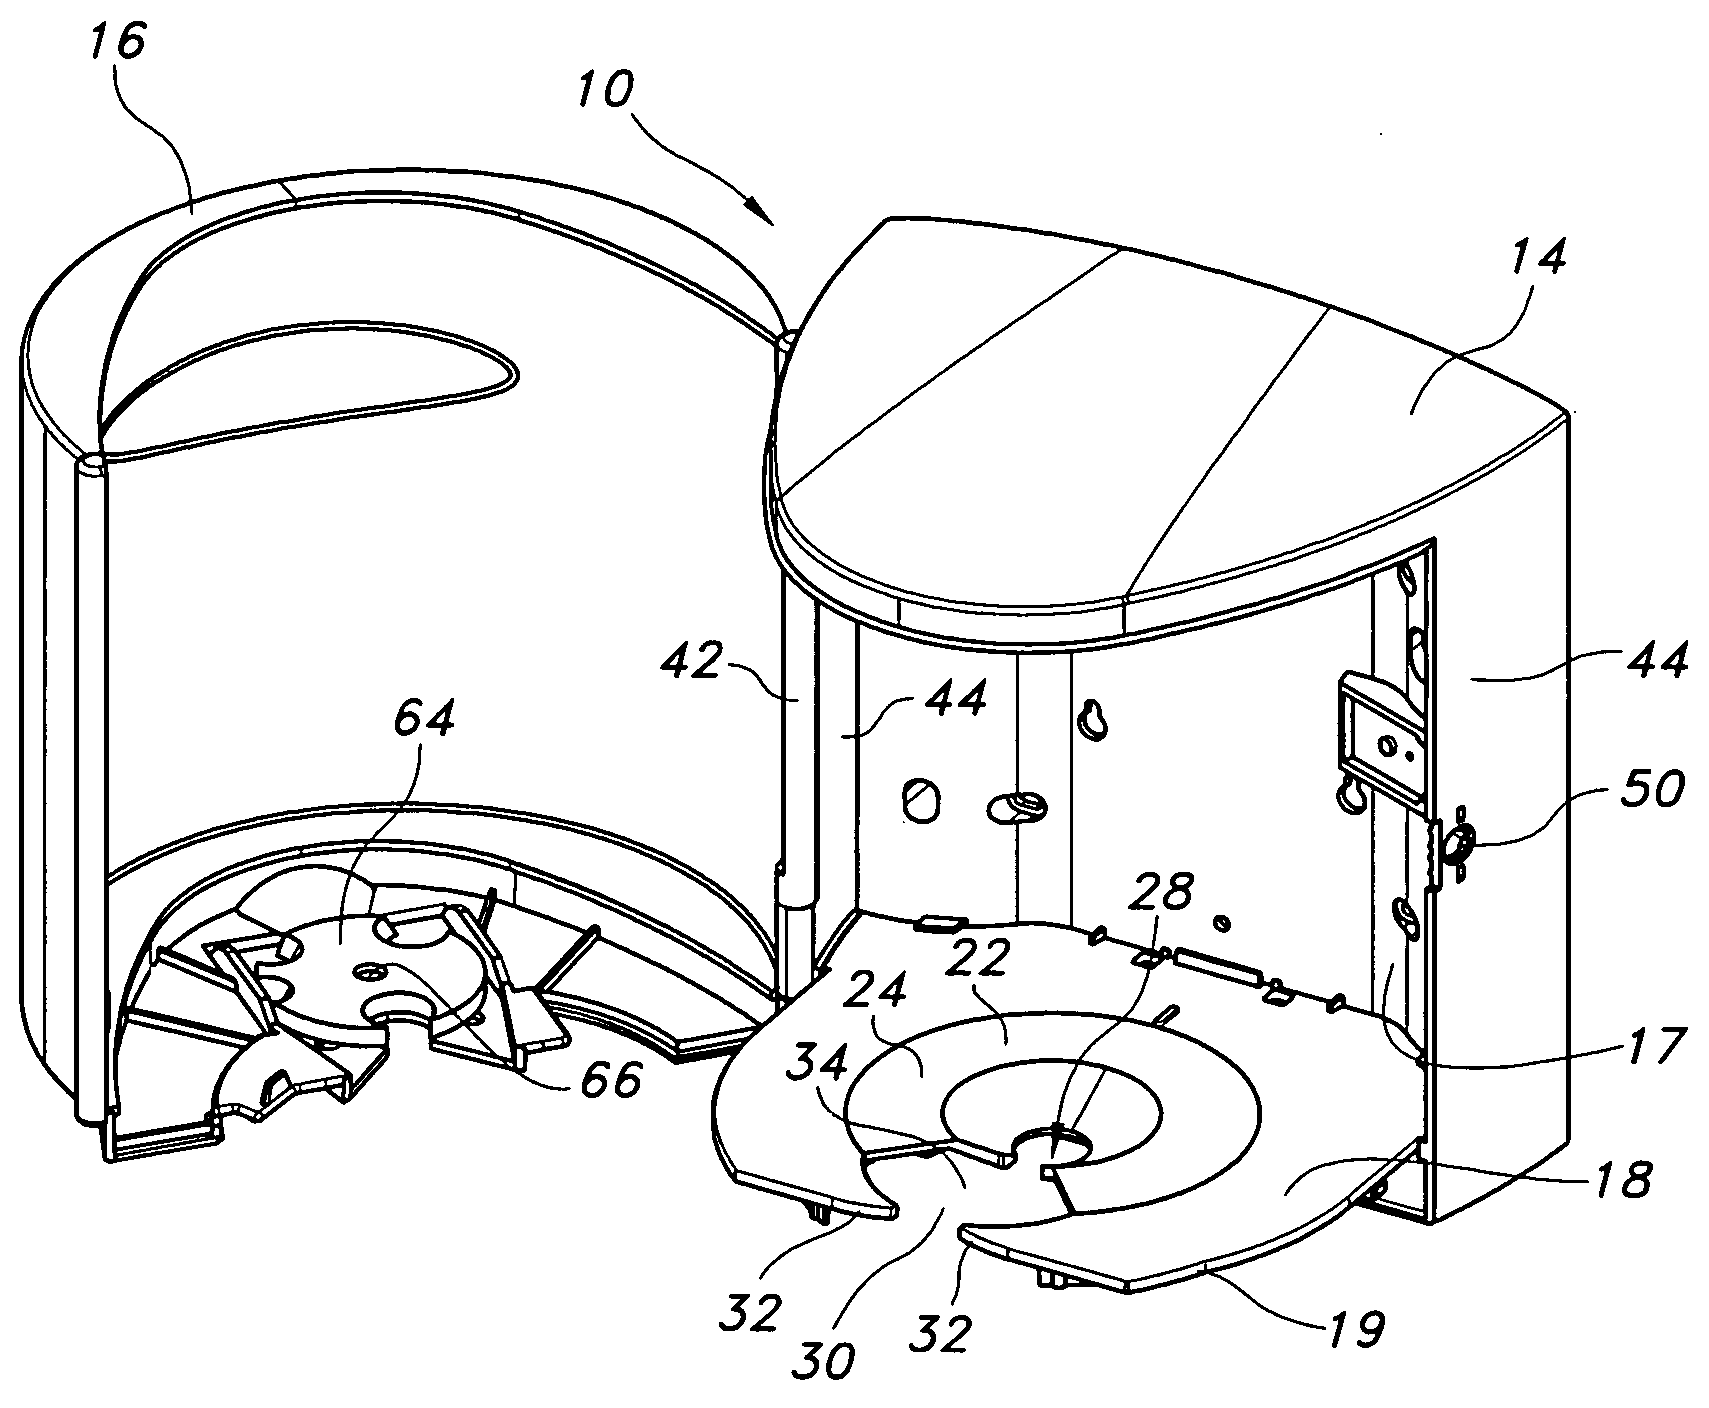 Dispenser for sheet material